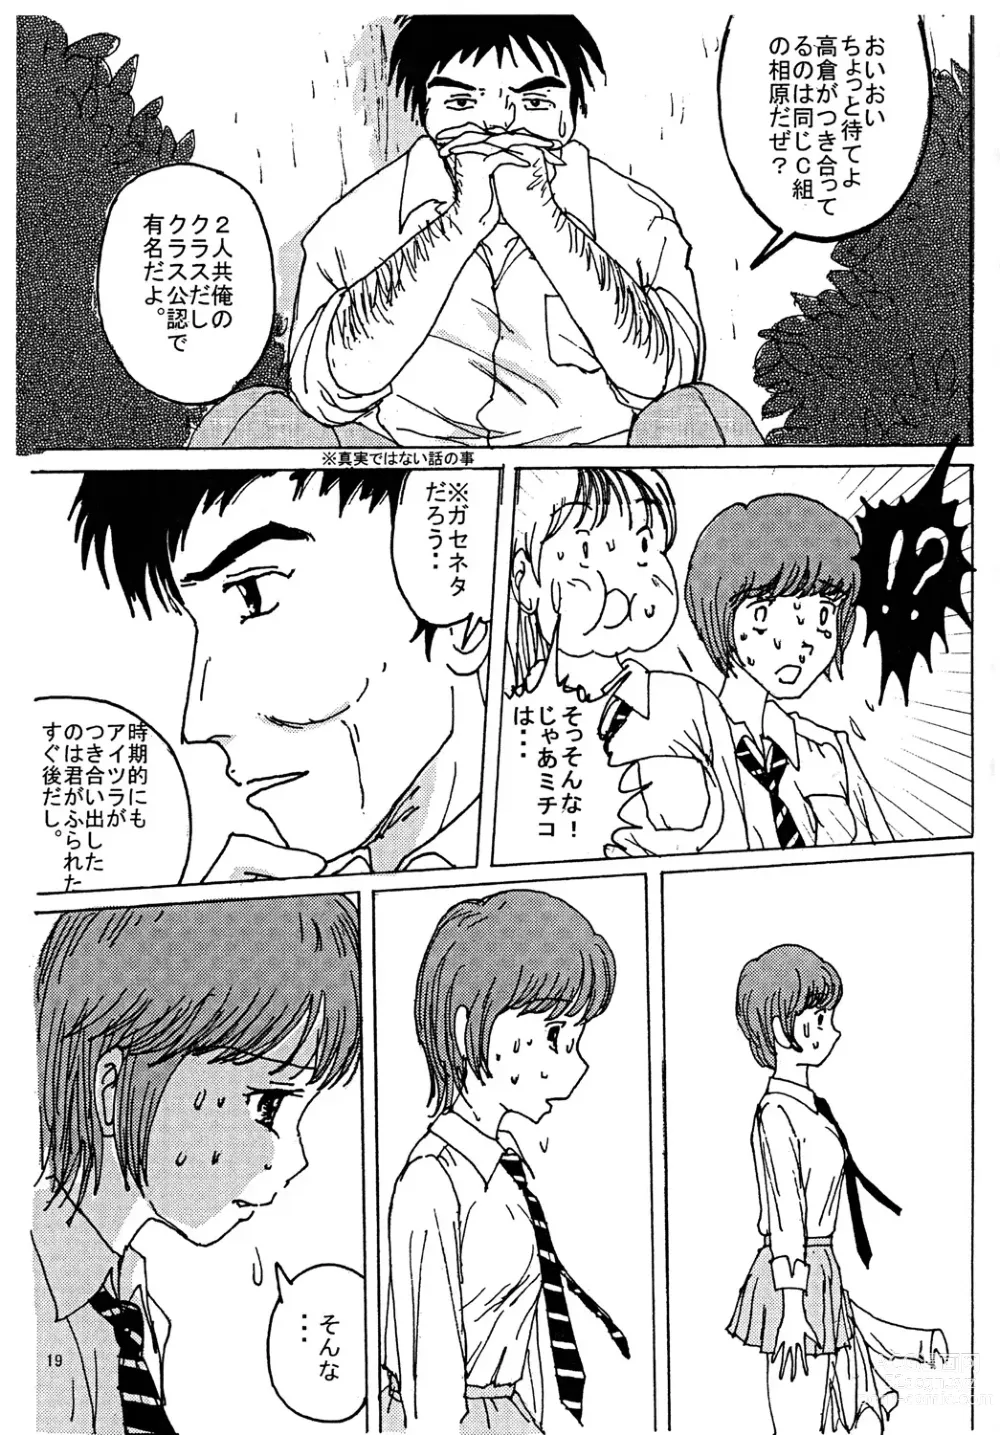 Page 18 of doujinshi Mune Ippai no Dizzy